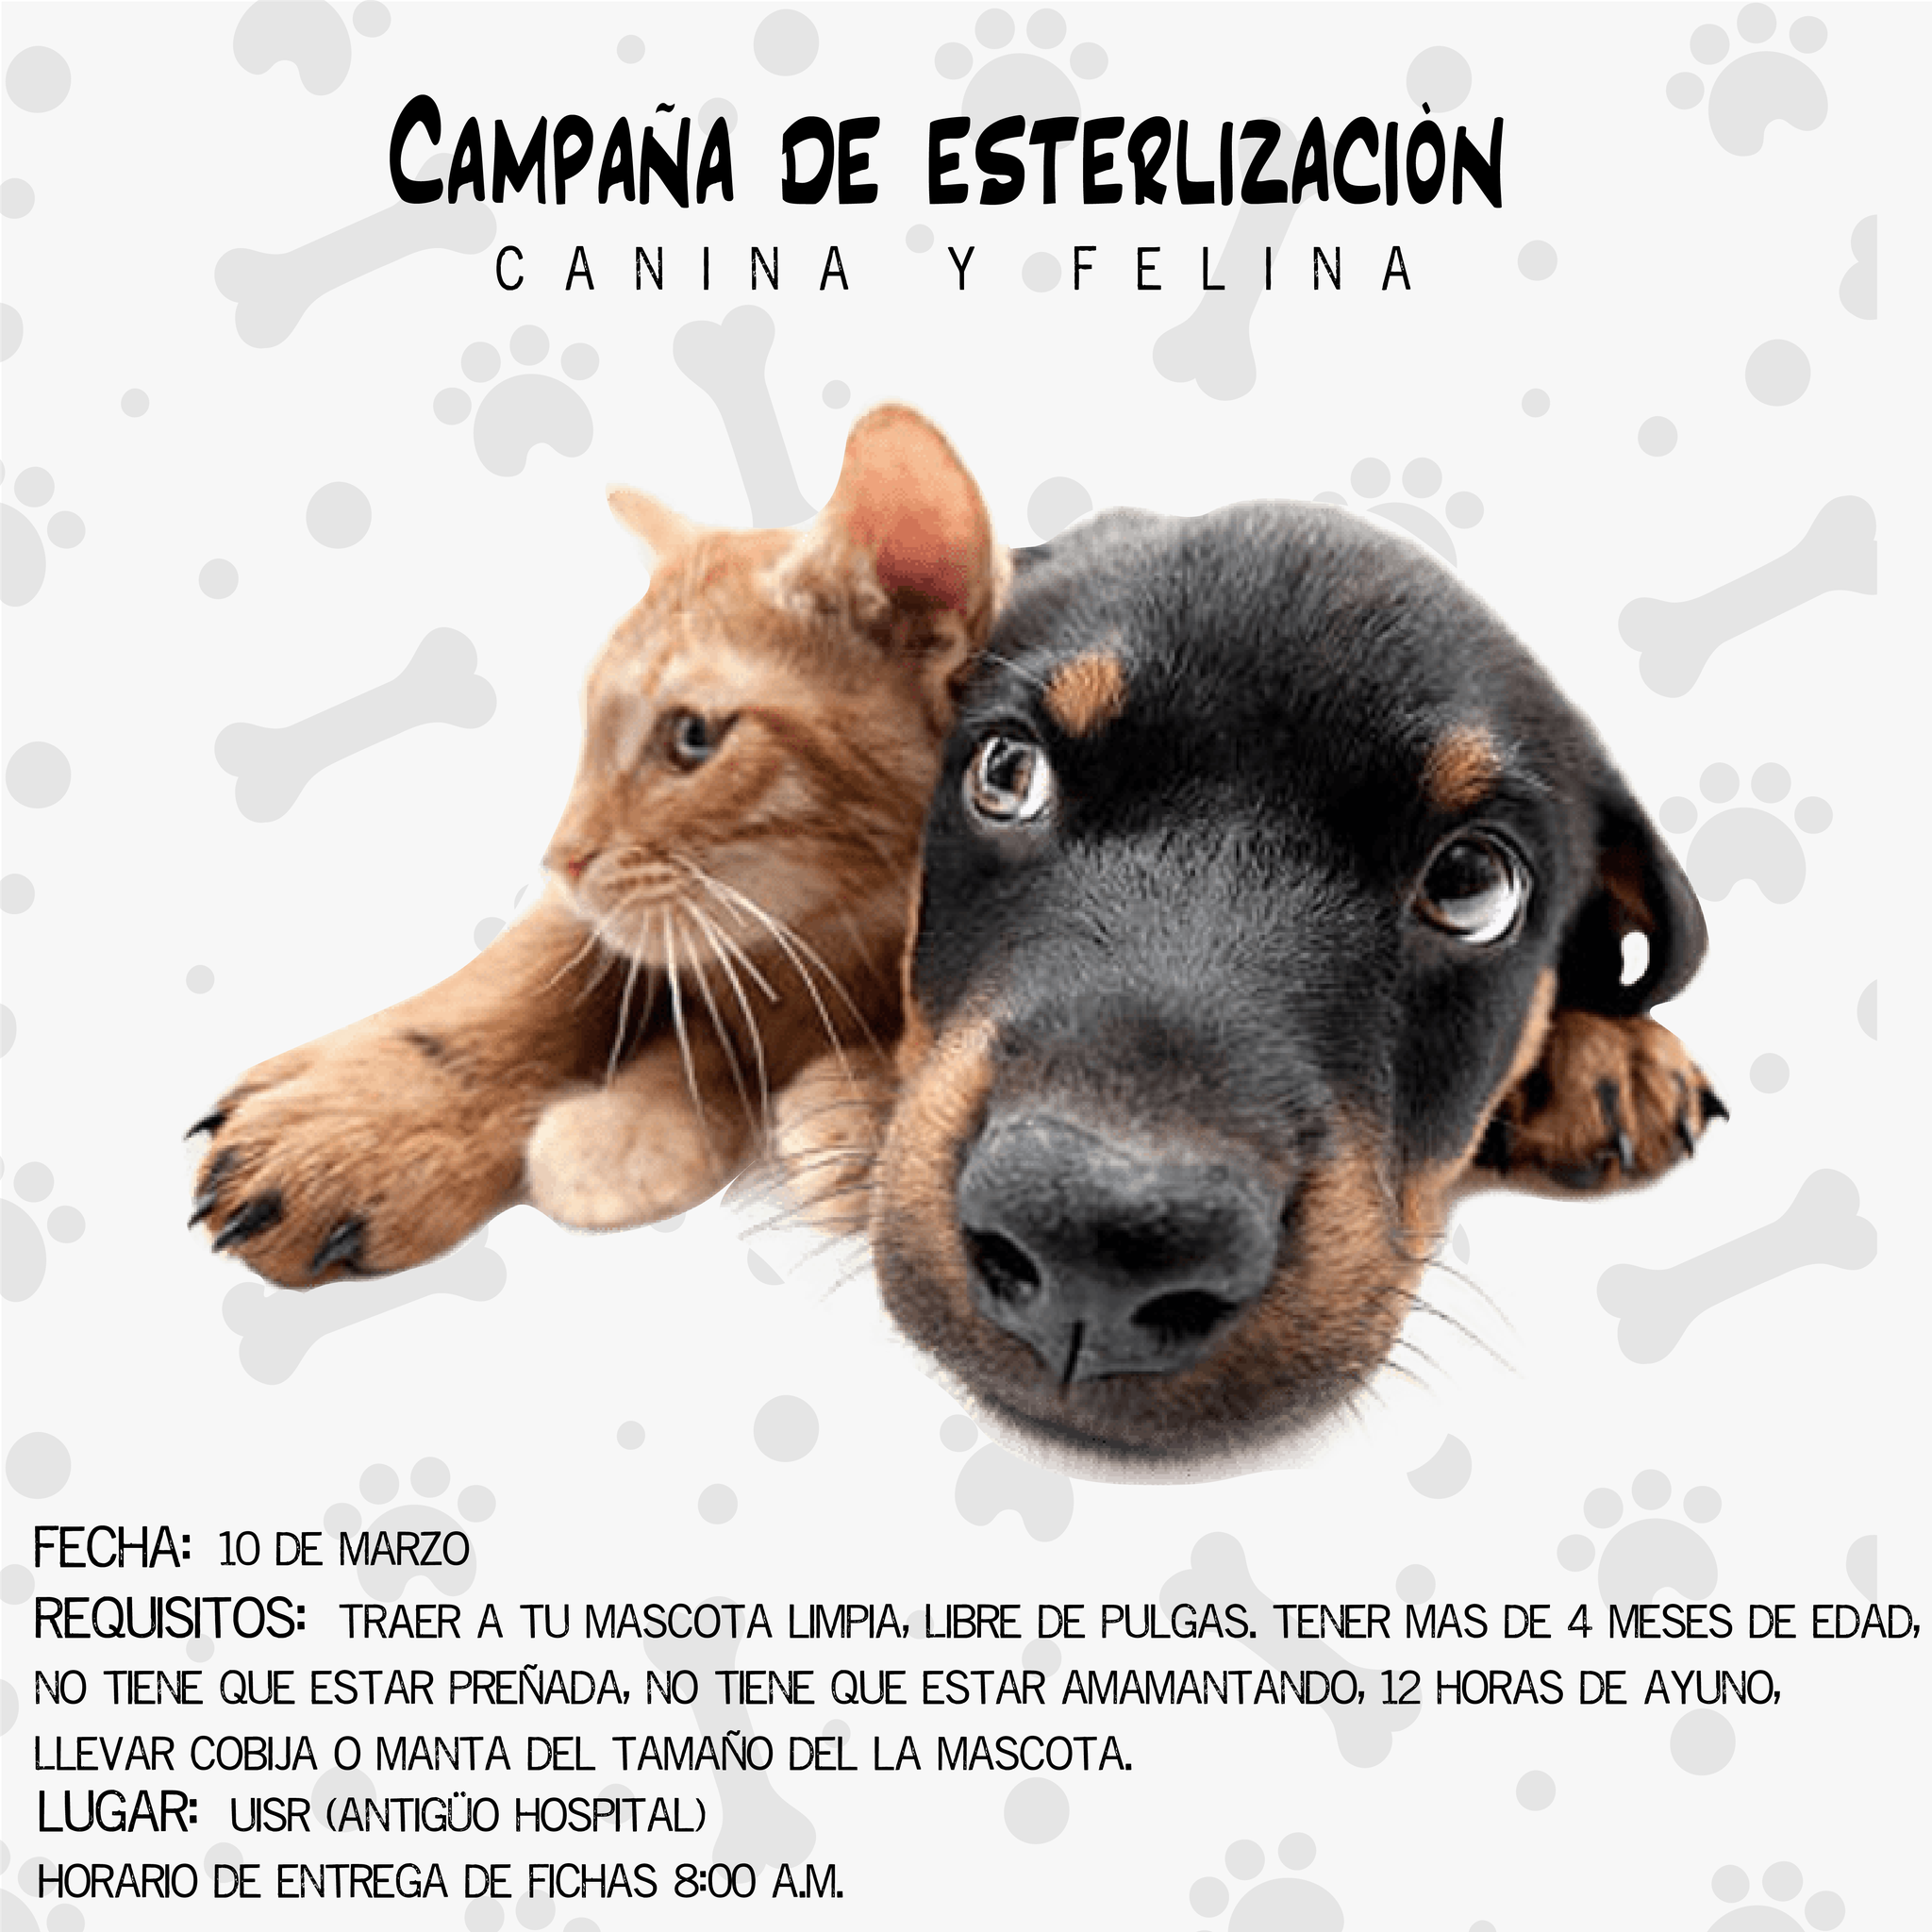 Campaña de esterilización canina y felina